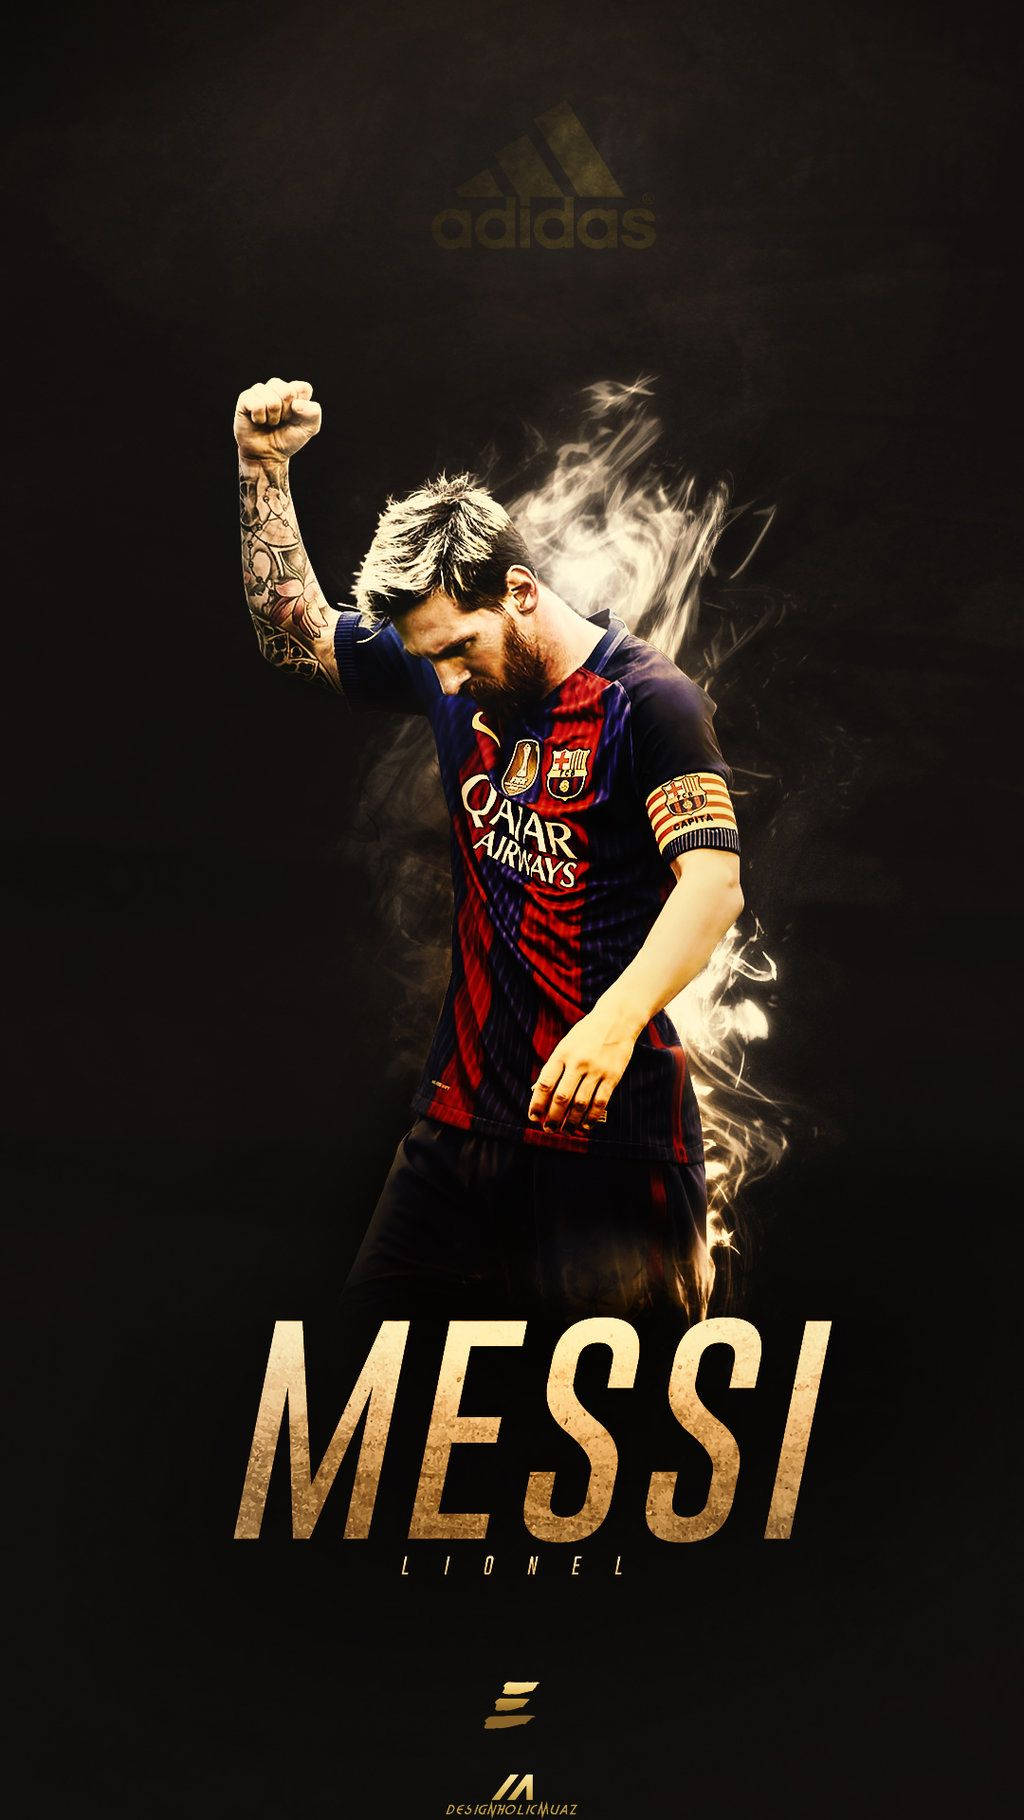 Messi Lionel Fist Pump Background